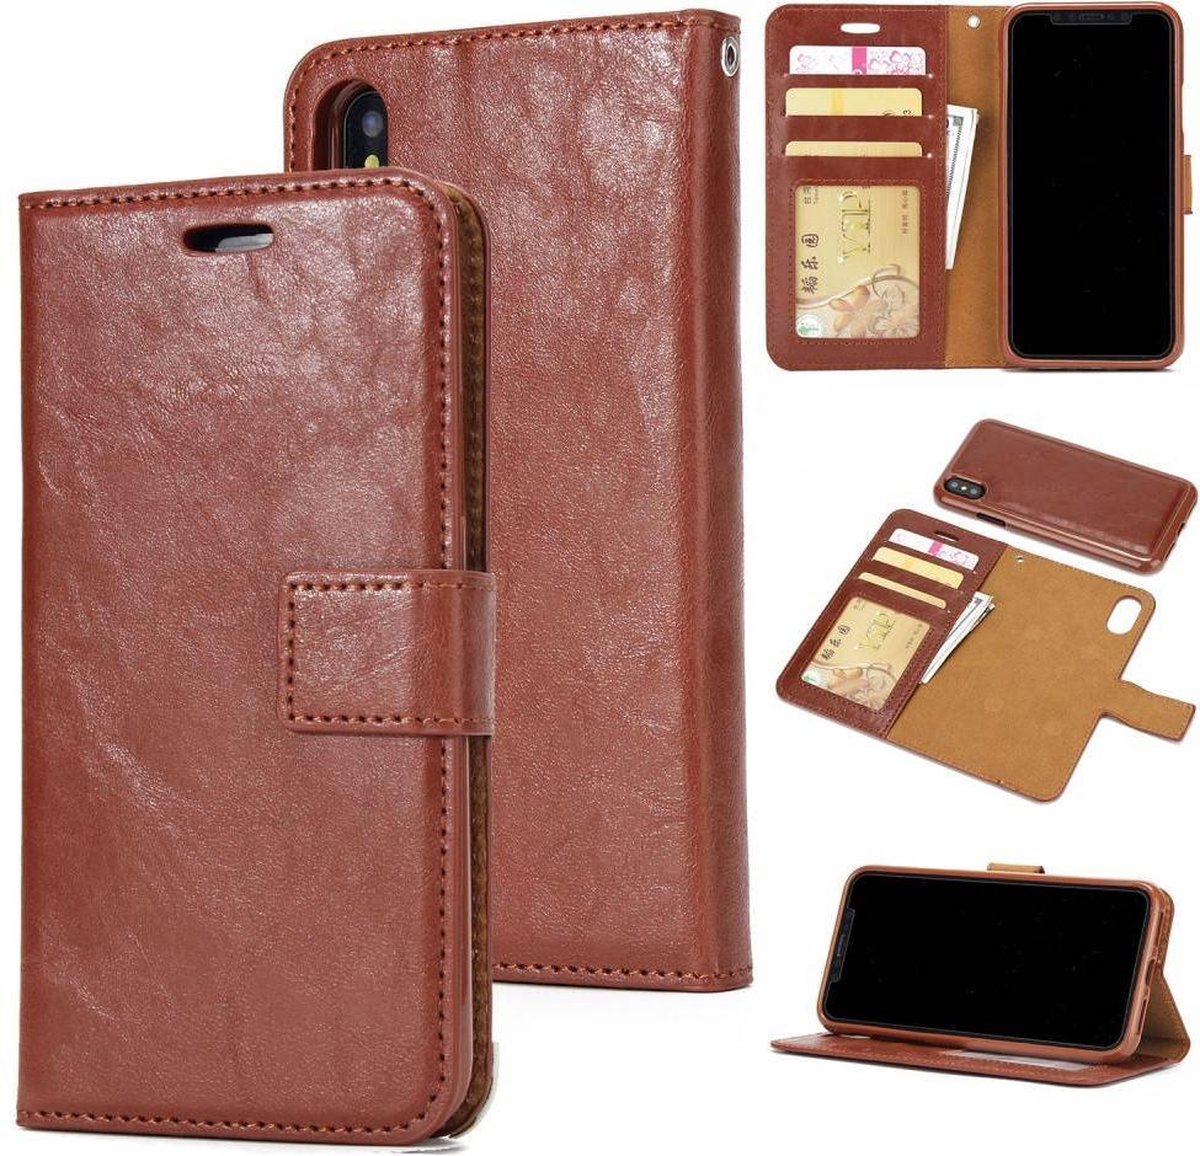 afneembare 2 in 1 crazy horse tpu leren wallet case voor de iphone x bruin